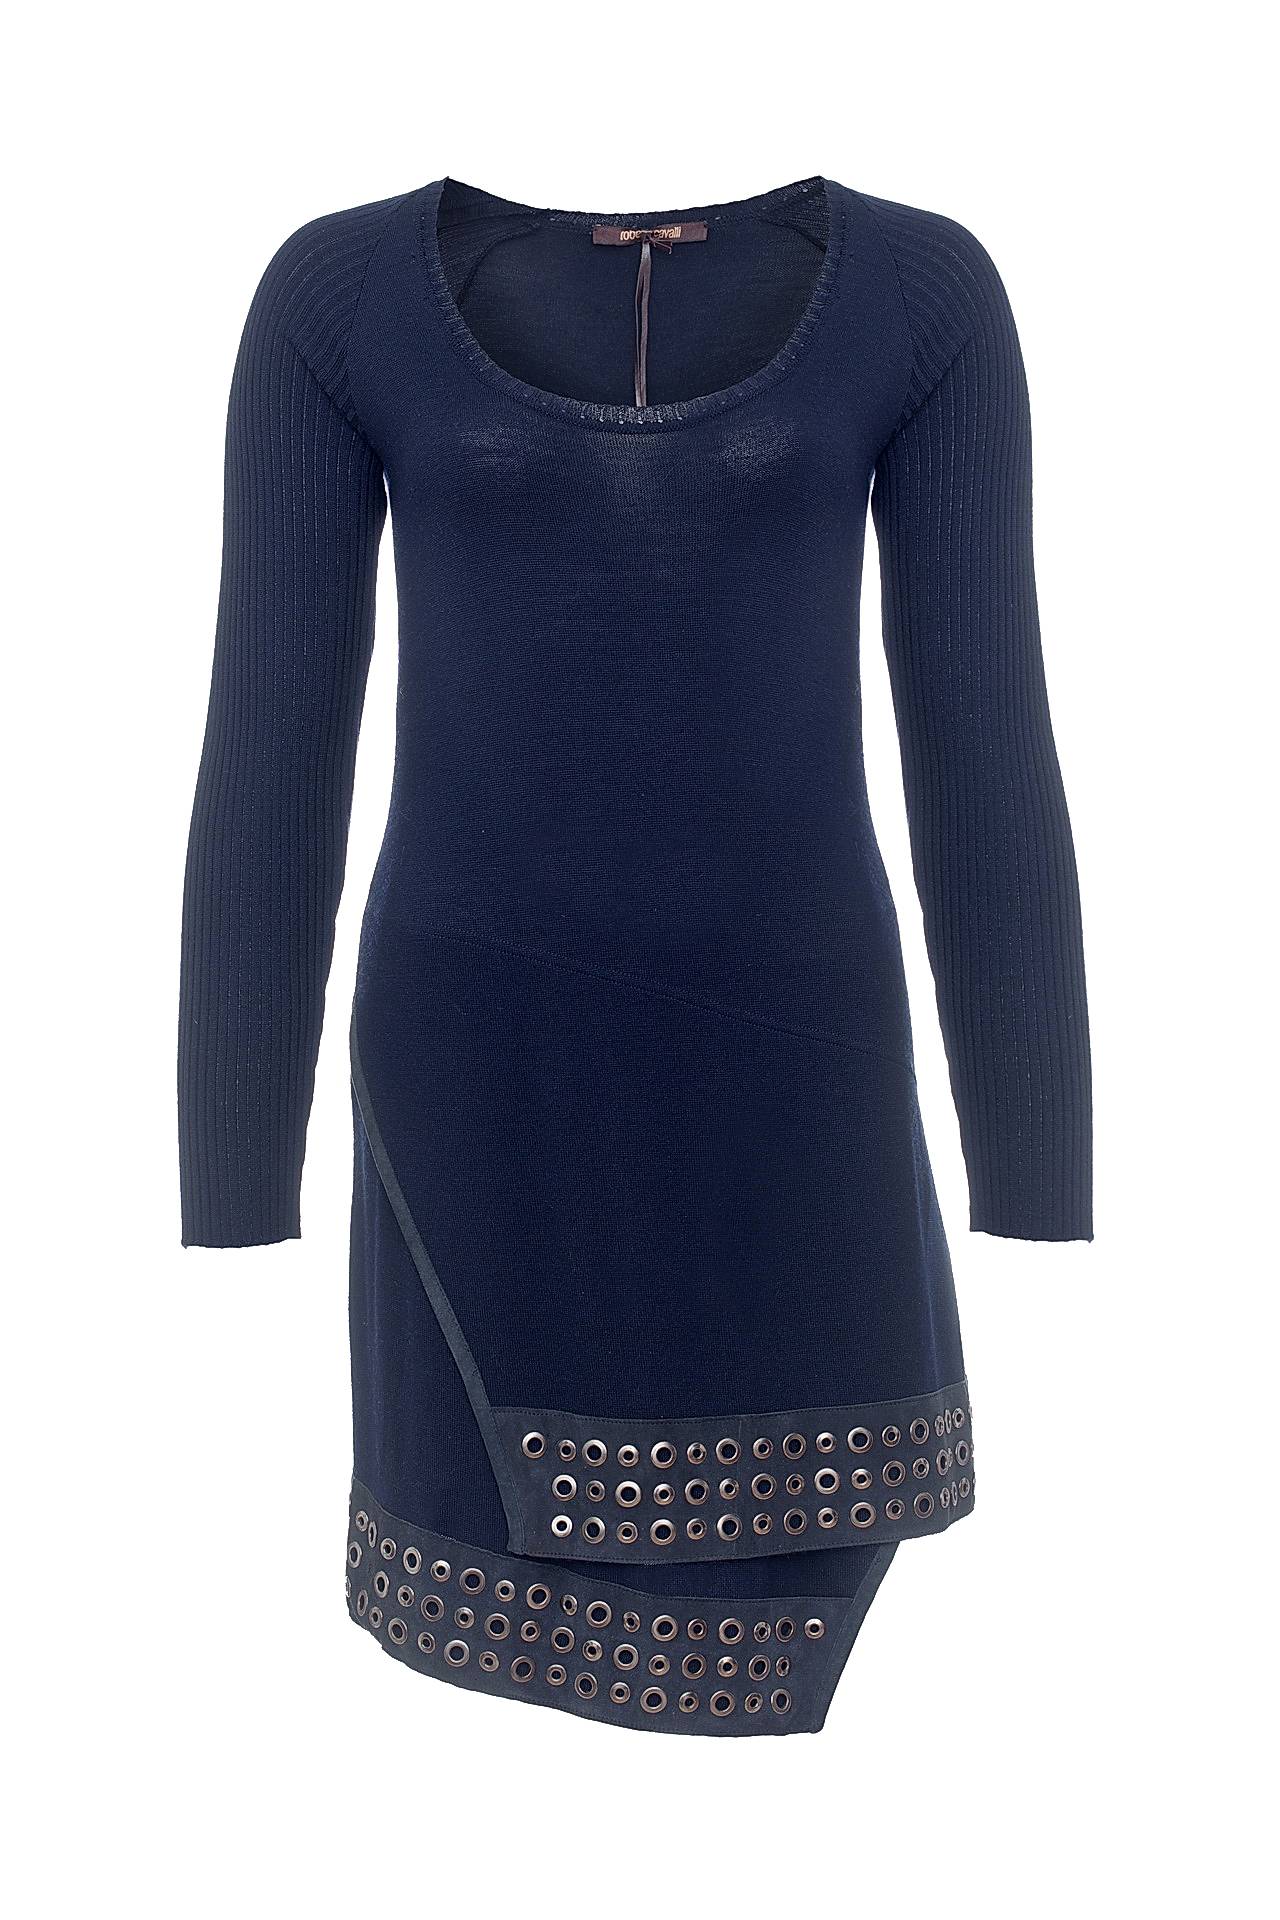 Одежда женская Платье ROBERTO CAVALLI (MDM694MV001/29). Купить за 35800 руб.